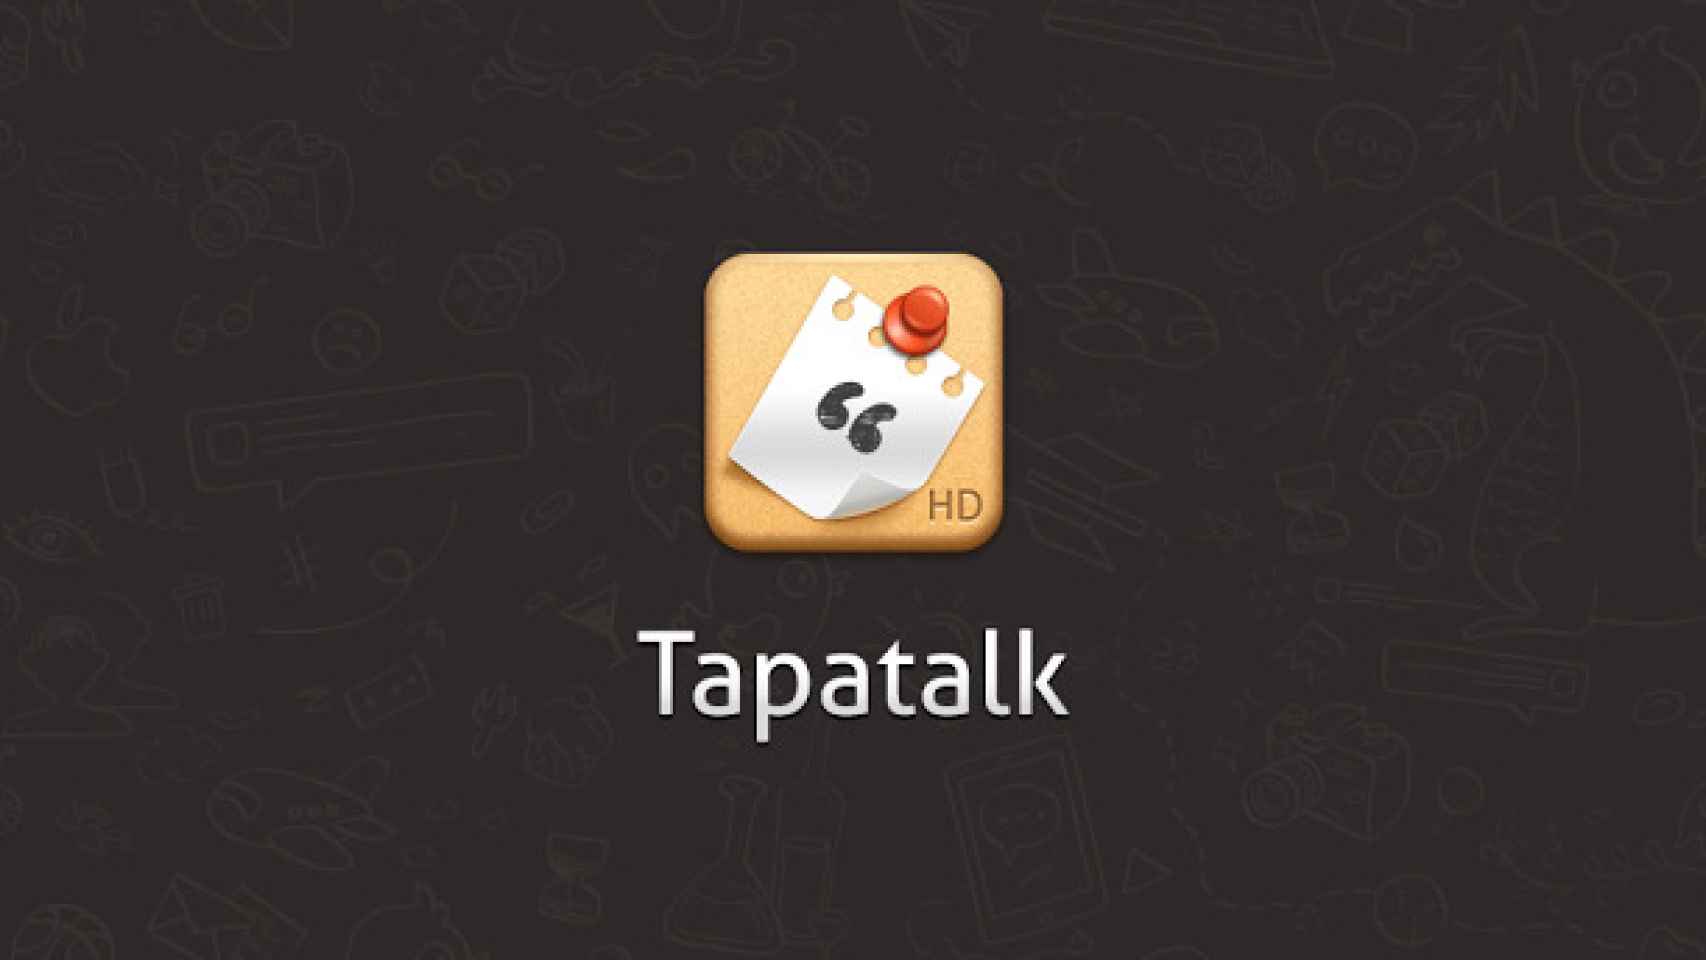 Tapatalk rastrea tus links y genera dinero con ellos a pesar de ser una app de pago